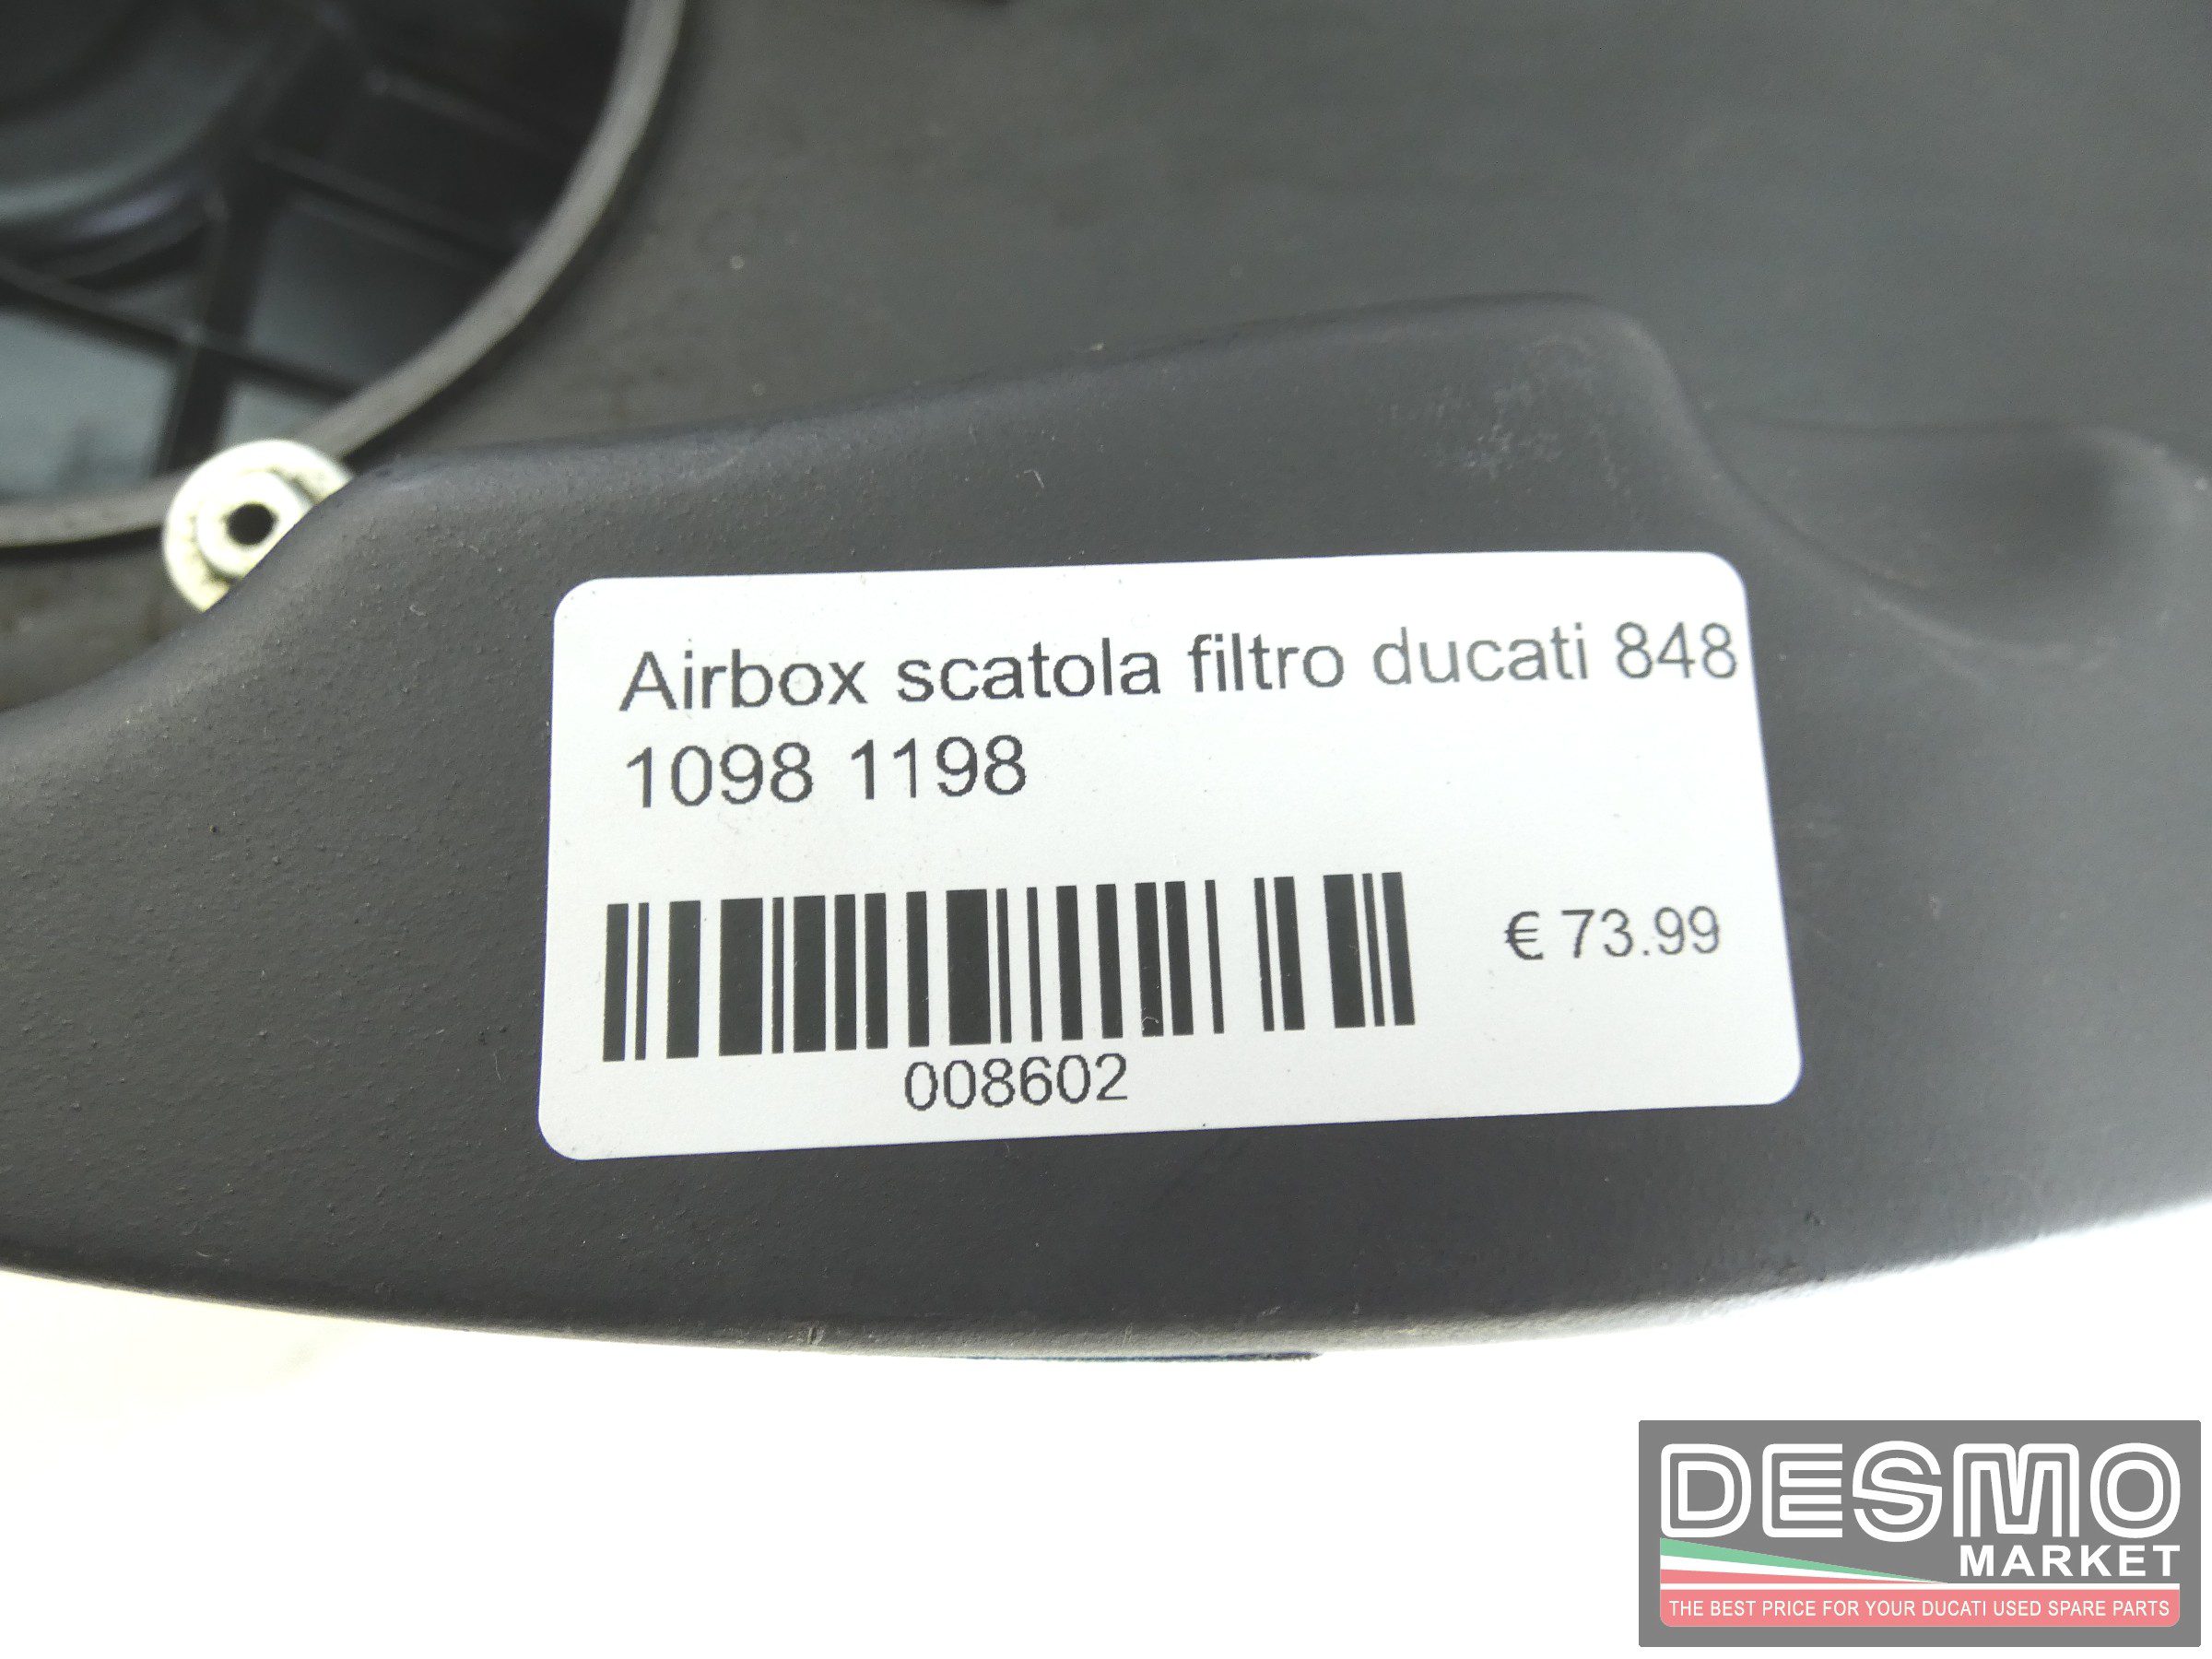 Airbox scatola filtro ducati 848 1098 1198